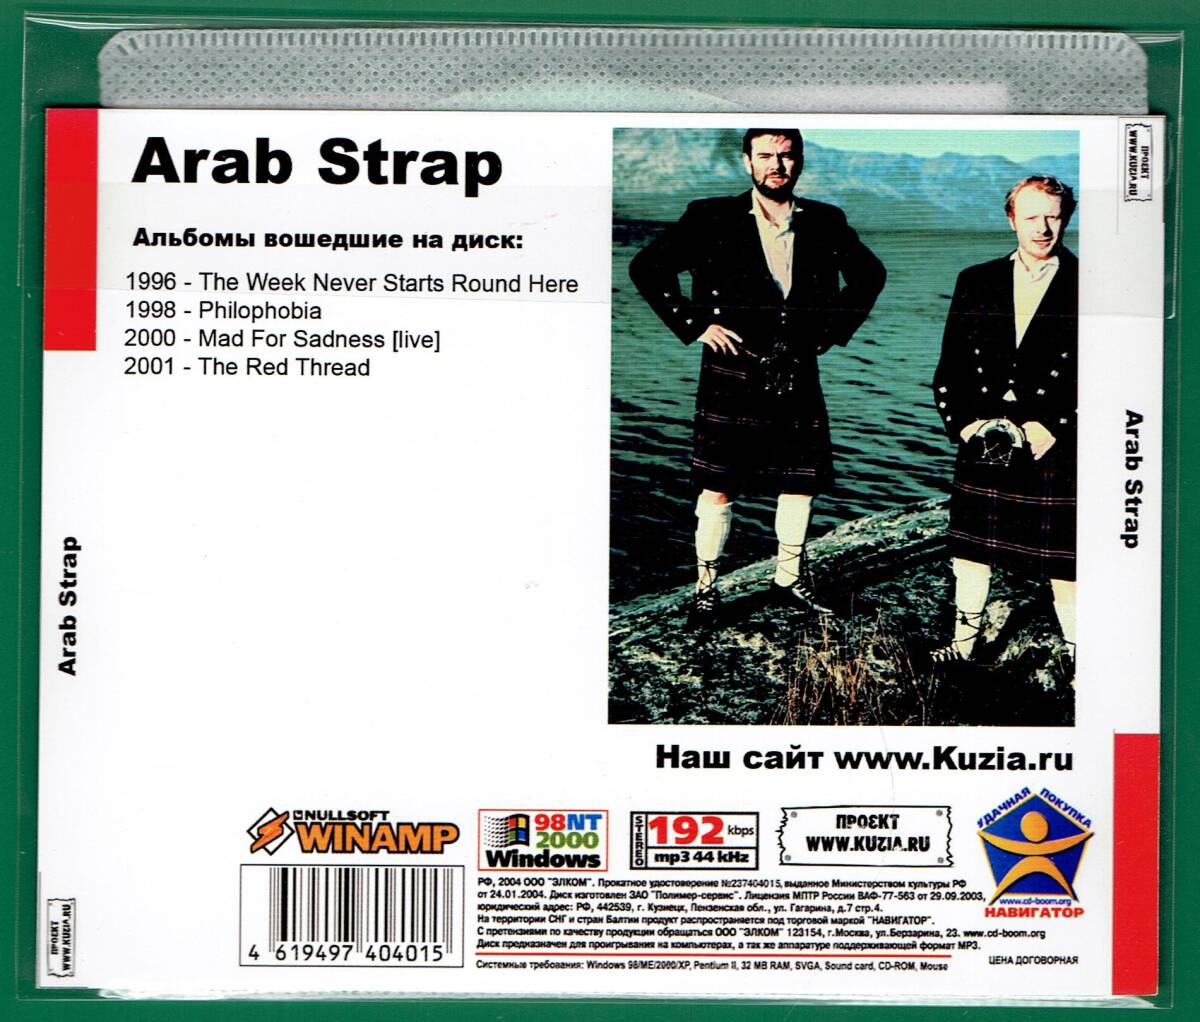 【現品限り・レアー品】ARAB STRAP 大アルバム集 【MP3-CD】 1枚CD◇_画像2